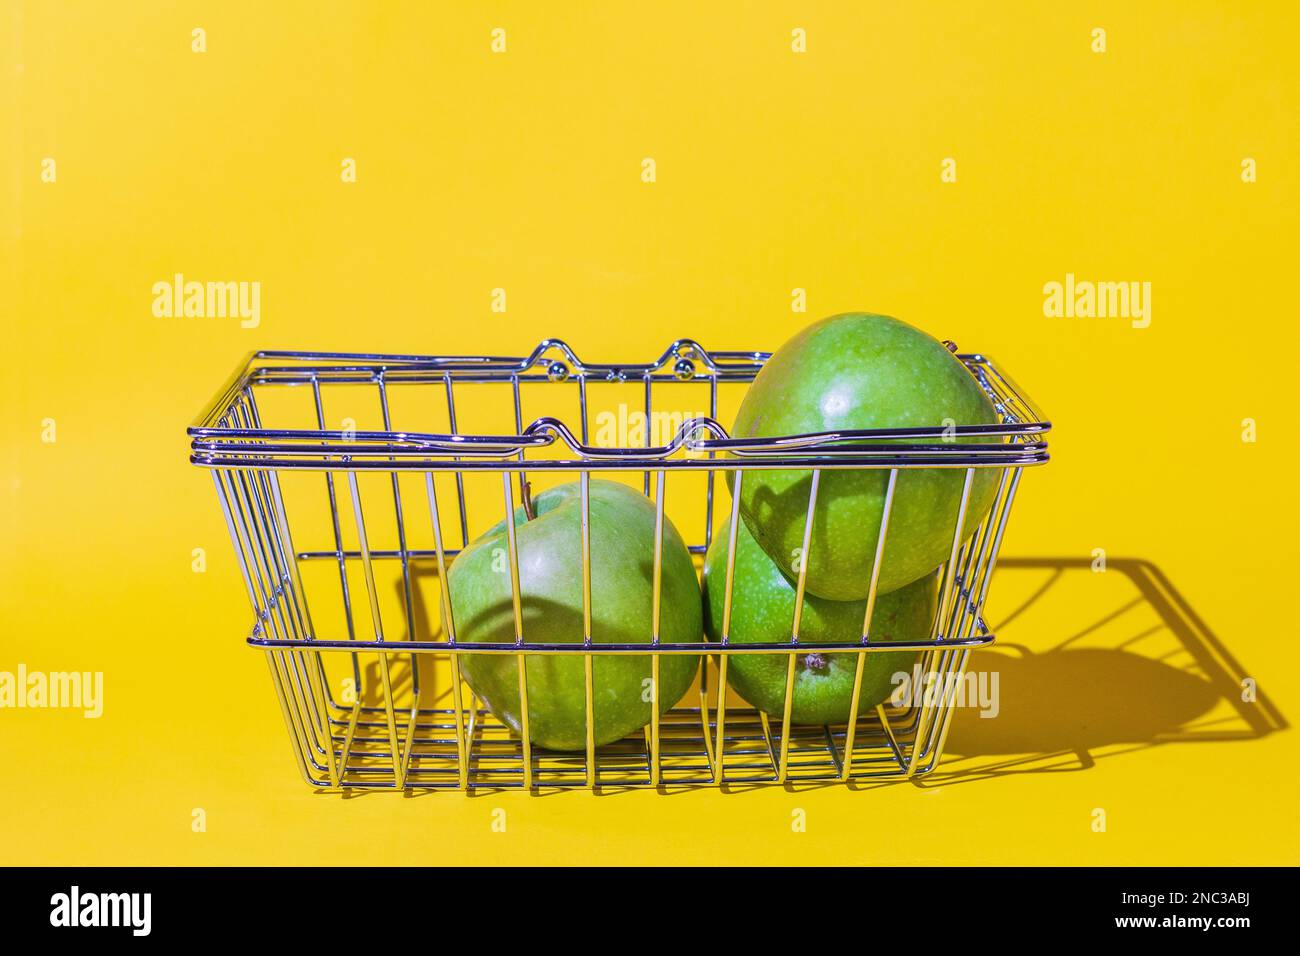 carrello con mele, frutta per il cibo, carrello supermercato, diversi oggetti, verde rotondo, griglia di metallo, si trova sulla superficie dello sfondo giallo. Foto Stock